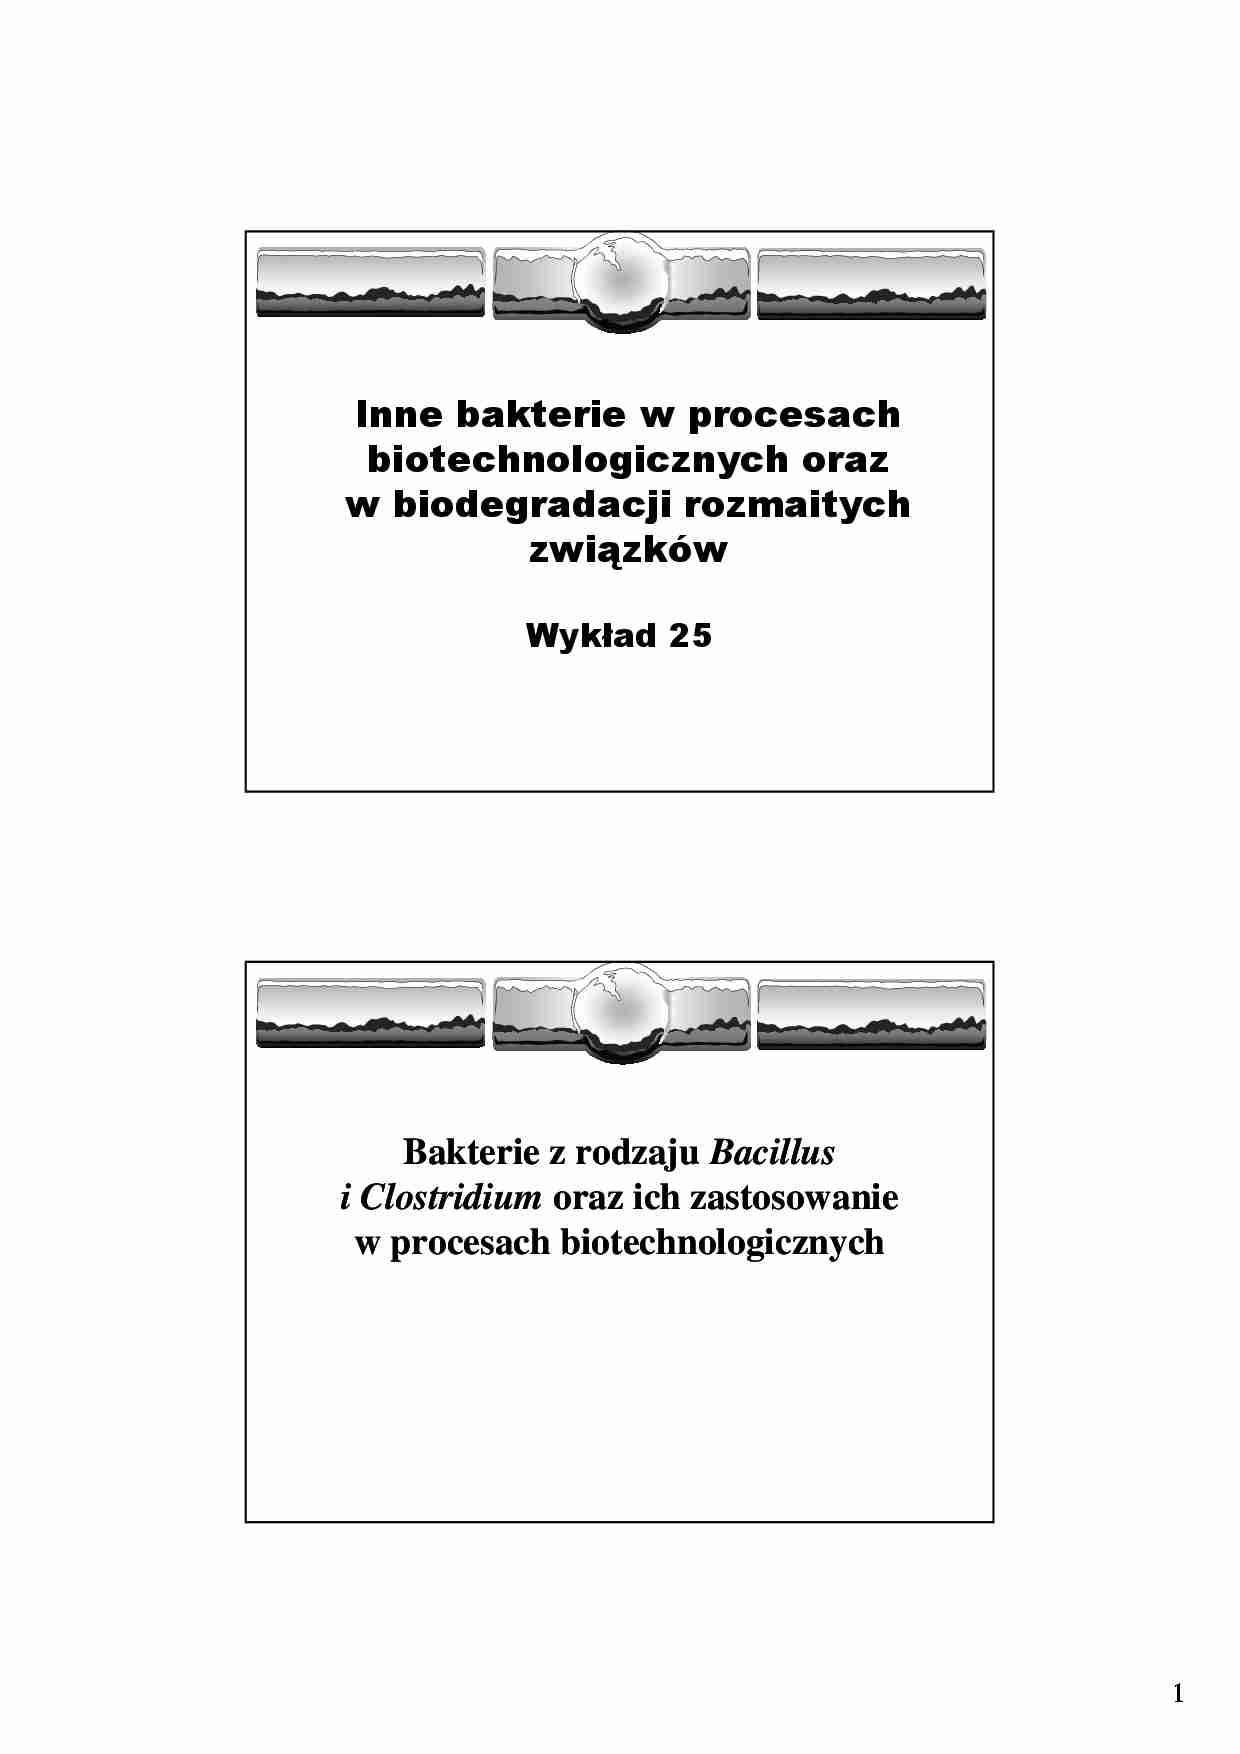  Inne bakterie w procesach biotechnologicznych oraz w biodegradacji rozmaitych związków- wykład 25 - strona 1